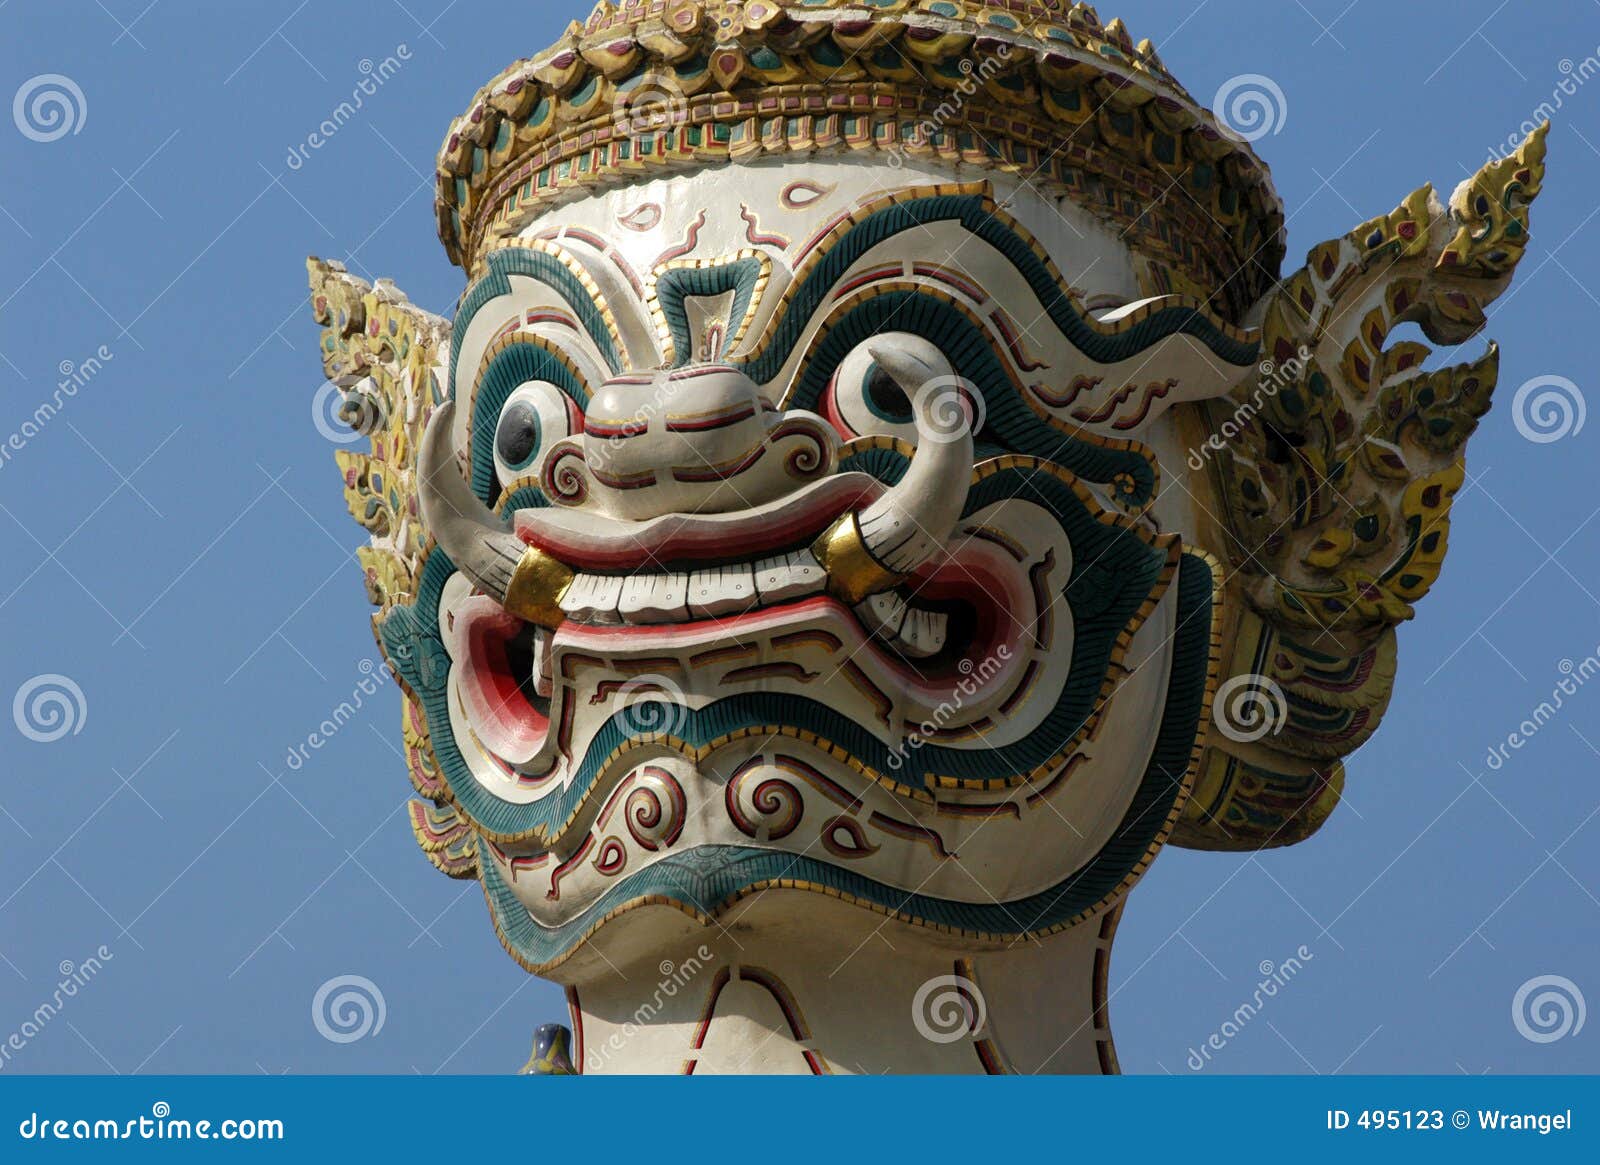 De Demon van Bangkok. Een opzichtig standbeeld van de Demon Yaksha die de belangrijkste ingang van Wat Phra Kaeo in Bangkok, Thailand bewaakt.